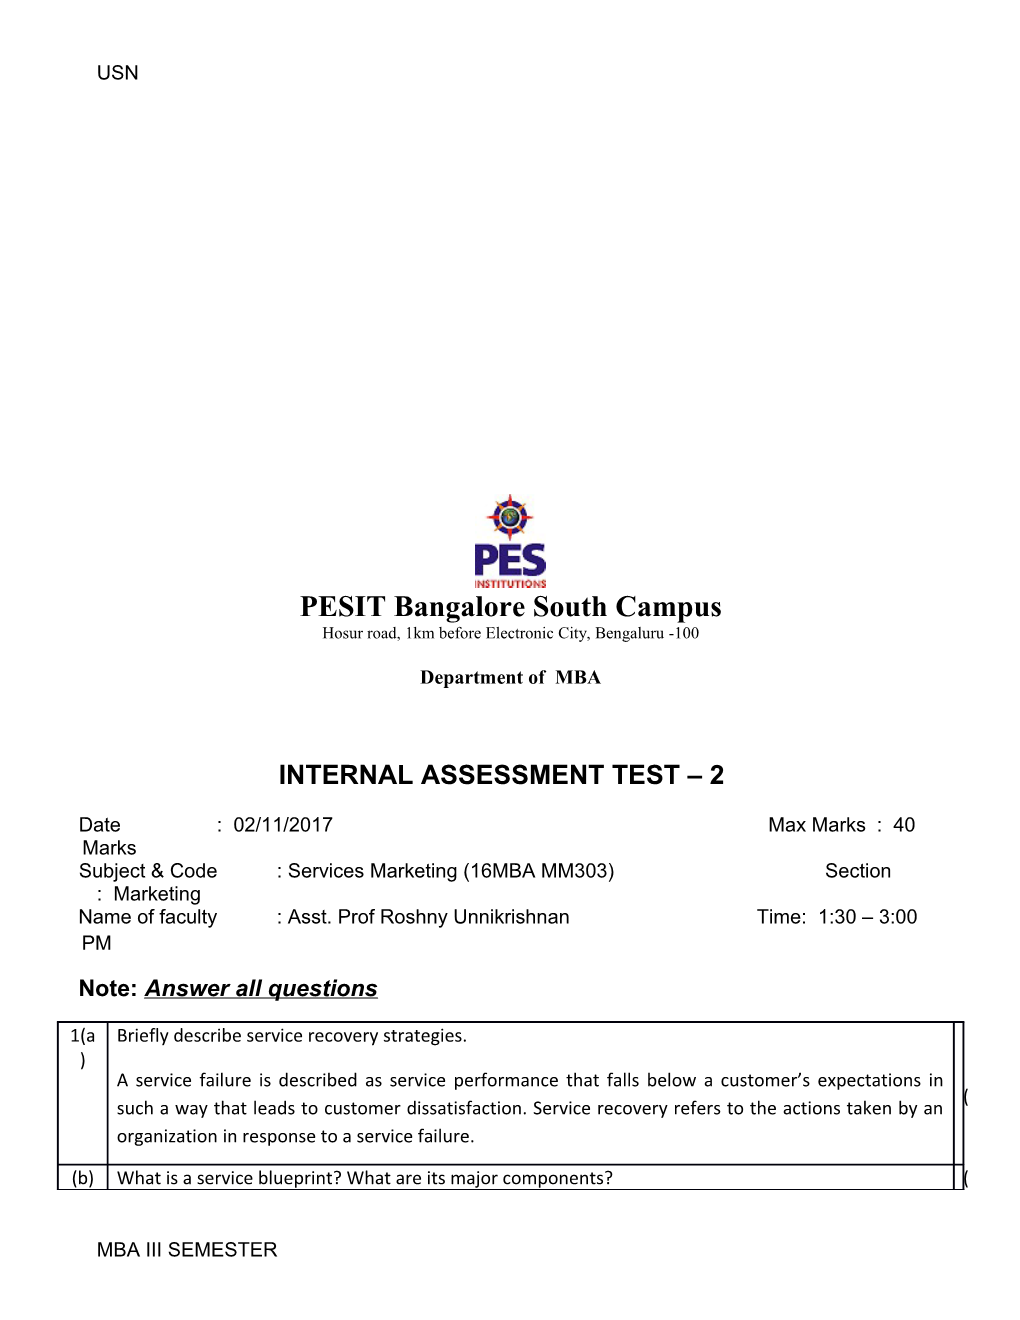 Internal Assessment Test 2